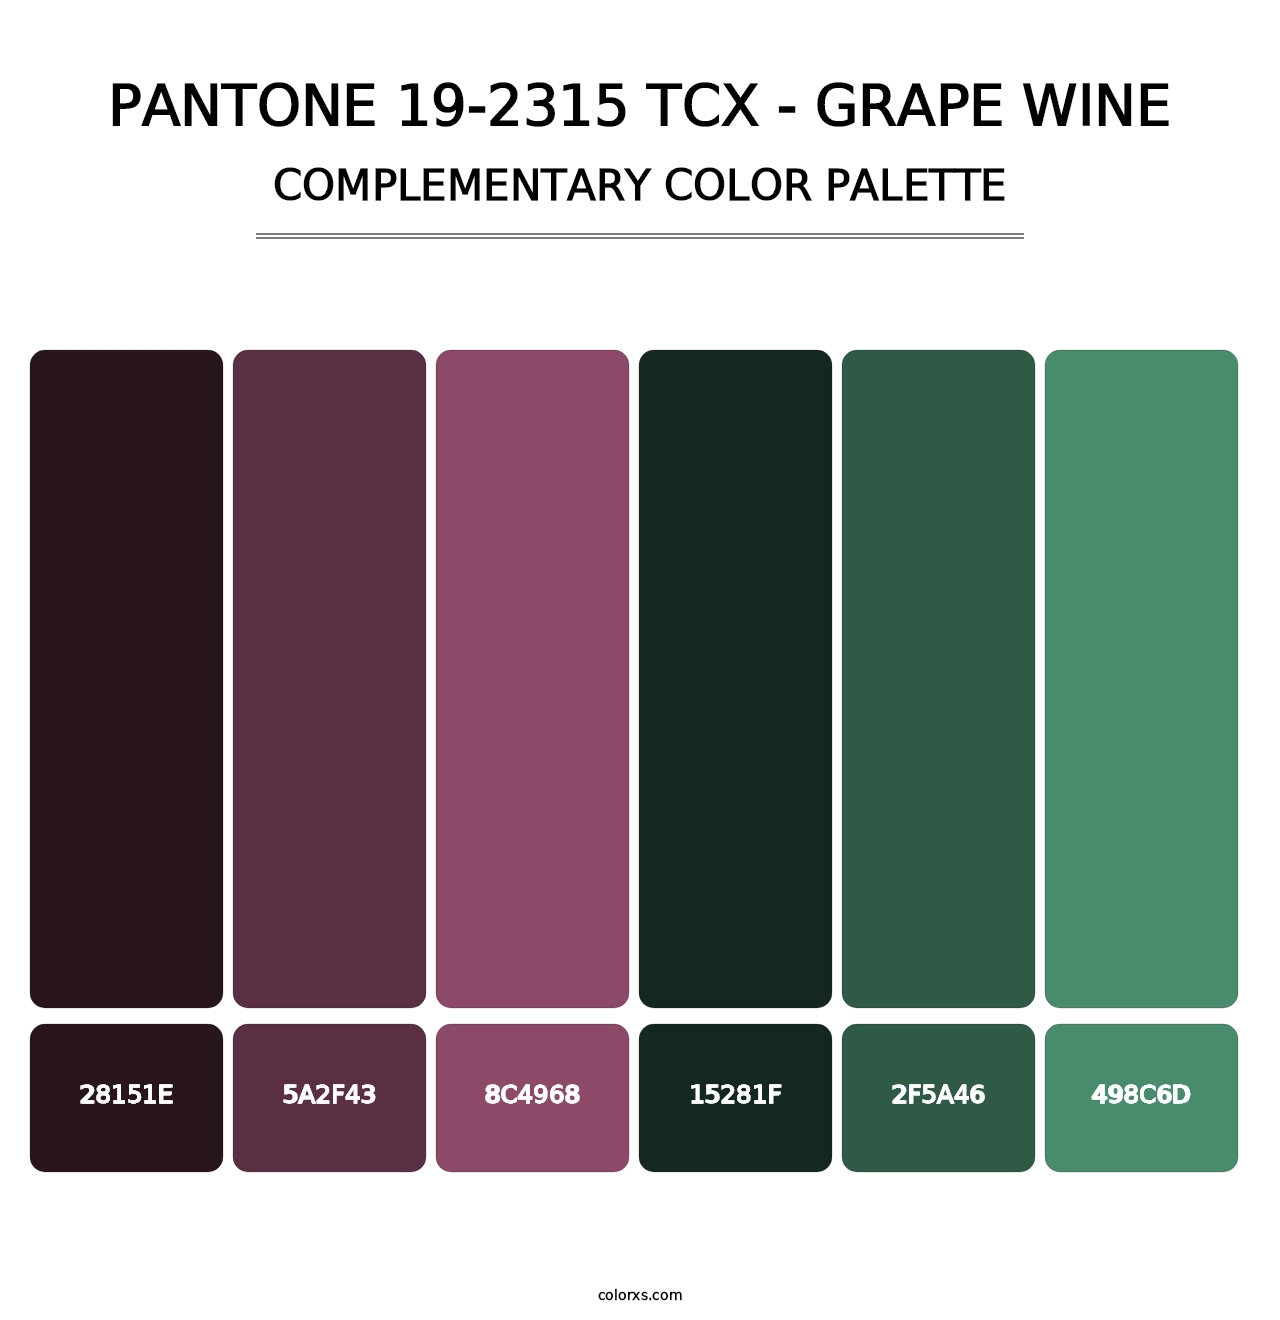 PANTONE 19-2315 TCX - Grape Wine - Complementary Color Palette